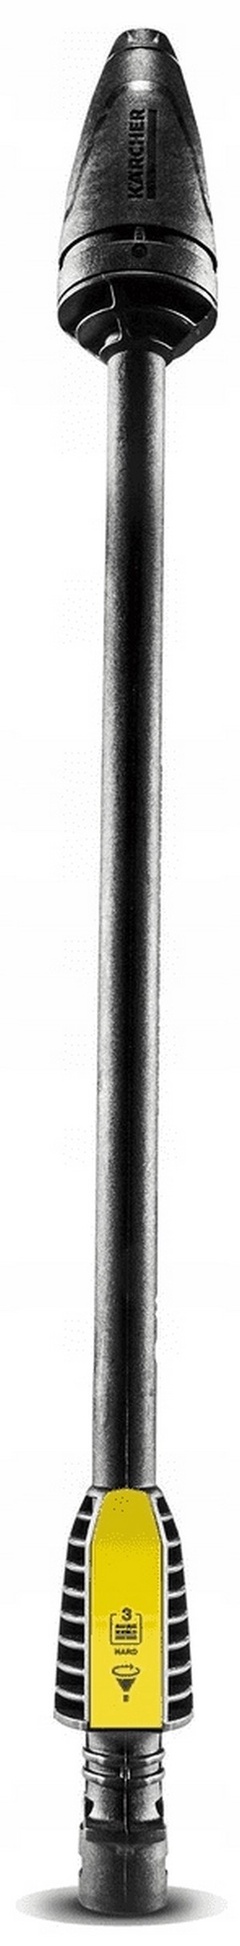 Фреза грязевая KARCHER DB 120 для К2-К3 арт,2,642-727,0 Германия